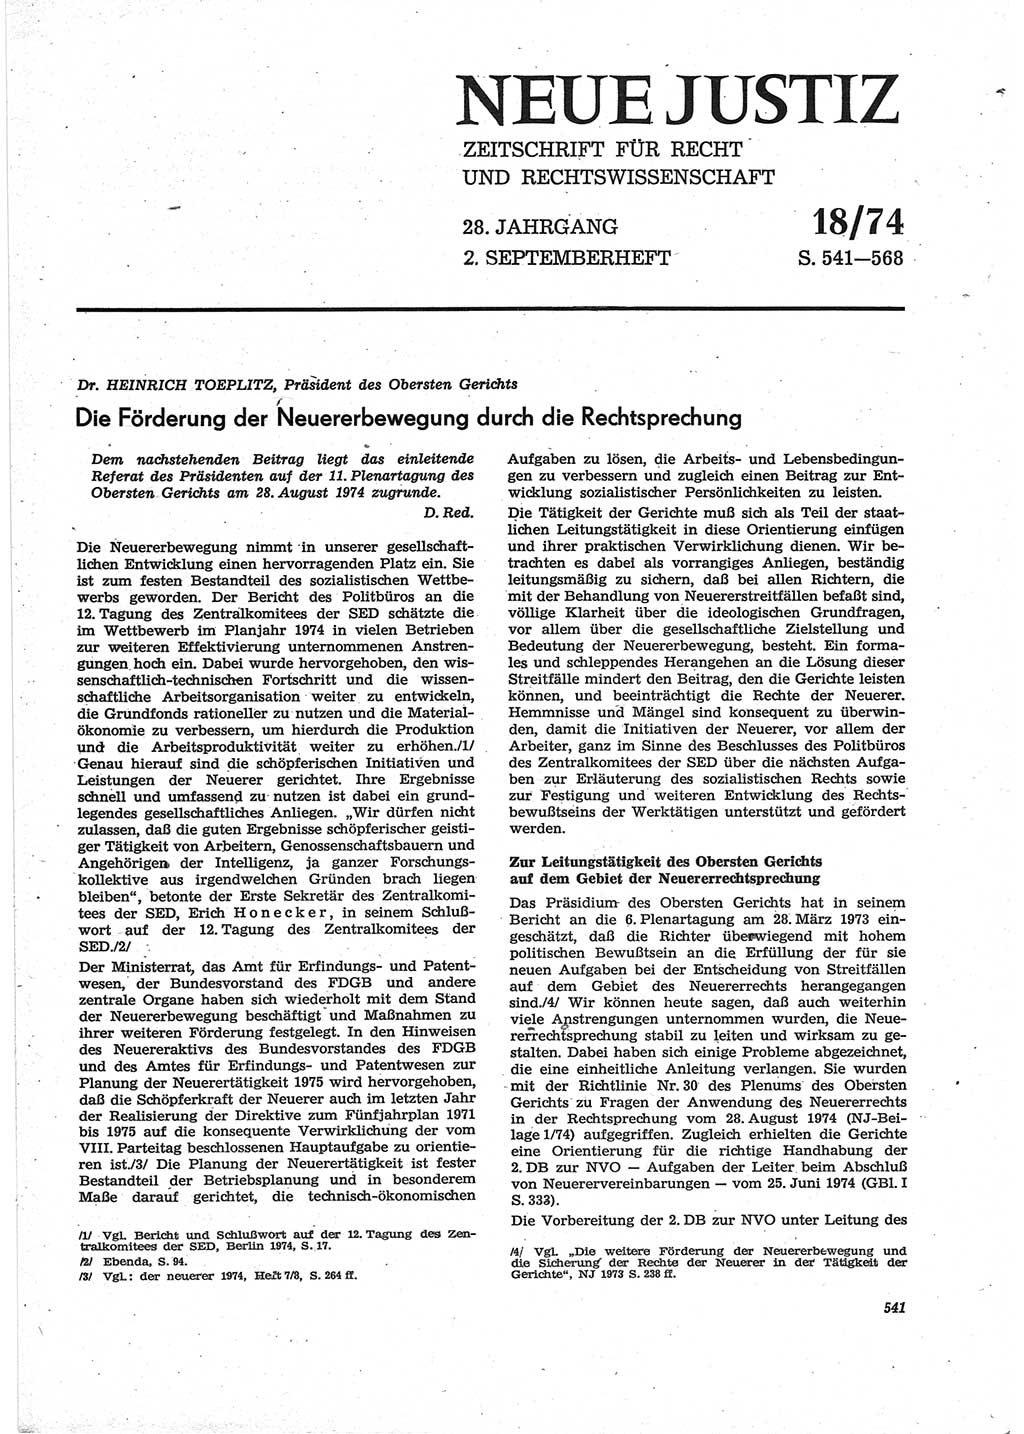 Neue Justiz (NJ), Zeitschrift für Recht und Rechtswissenschaft [Deutsche Demokratische Republik (DDR)], 28. Jahrgang 1974, Seite 541 (NJ DDR 1974, S. 541)